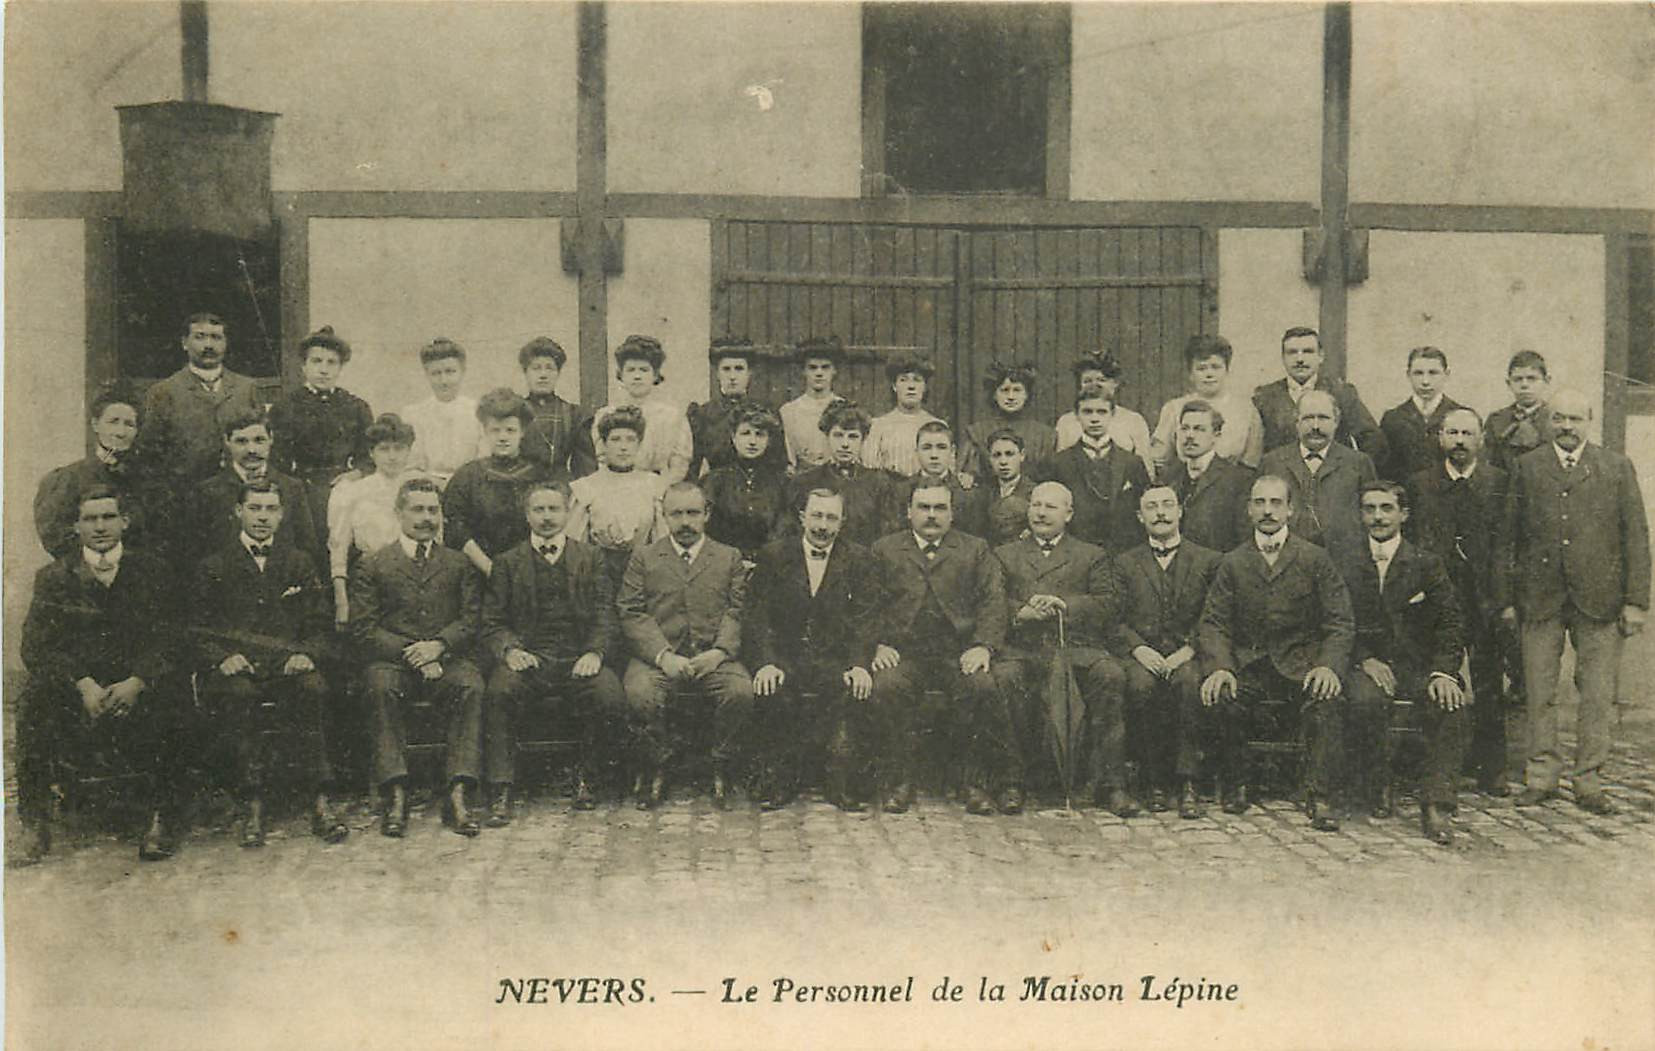 WW 58 NEVERS. Le Personnel de la Maison Lépine rue du Fer